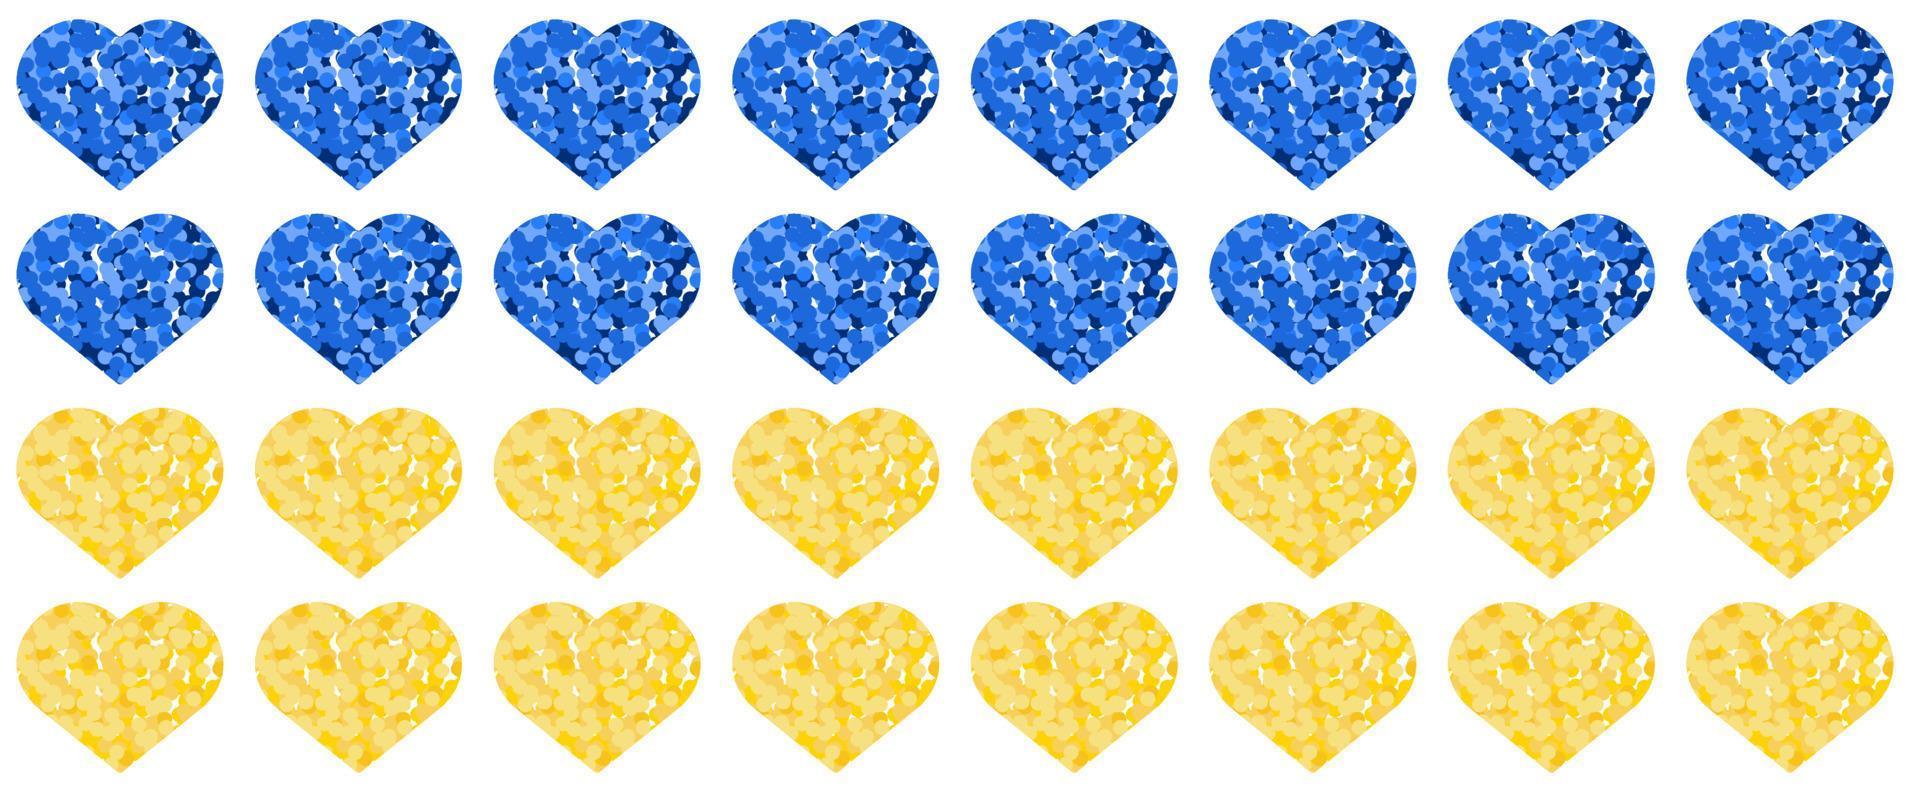 motif horizontal scintillant de coeurs bleus et jaunes. fond de vecteur ukrainien patriotique